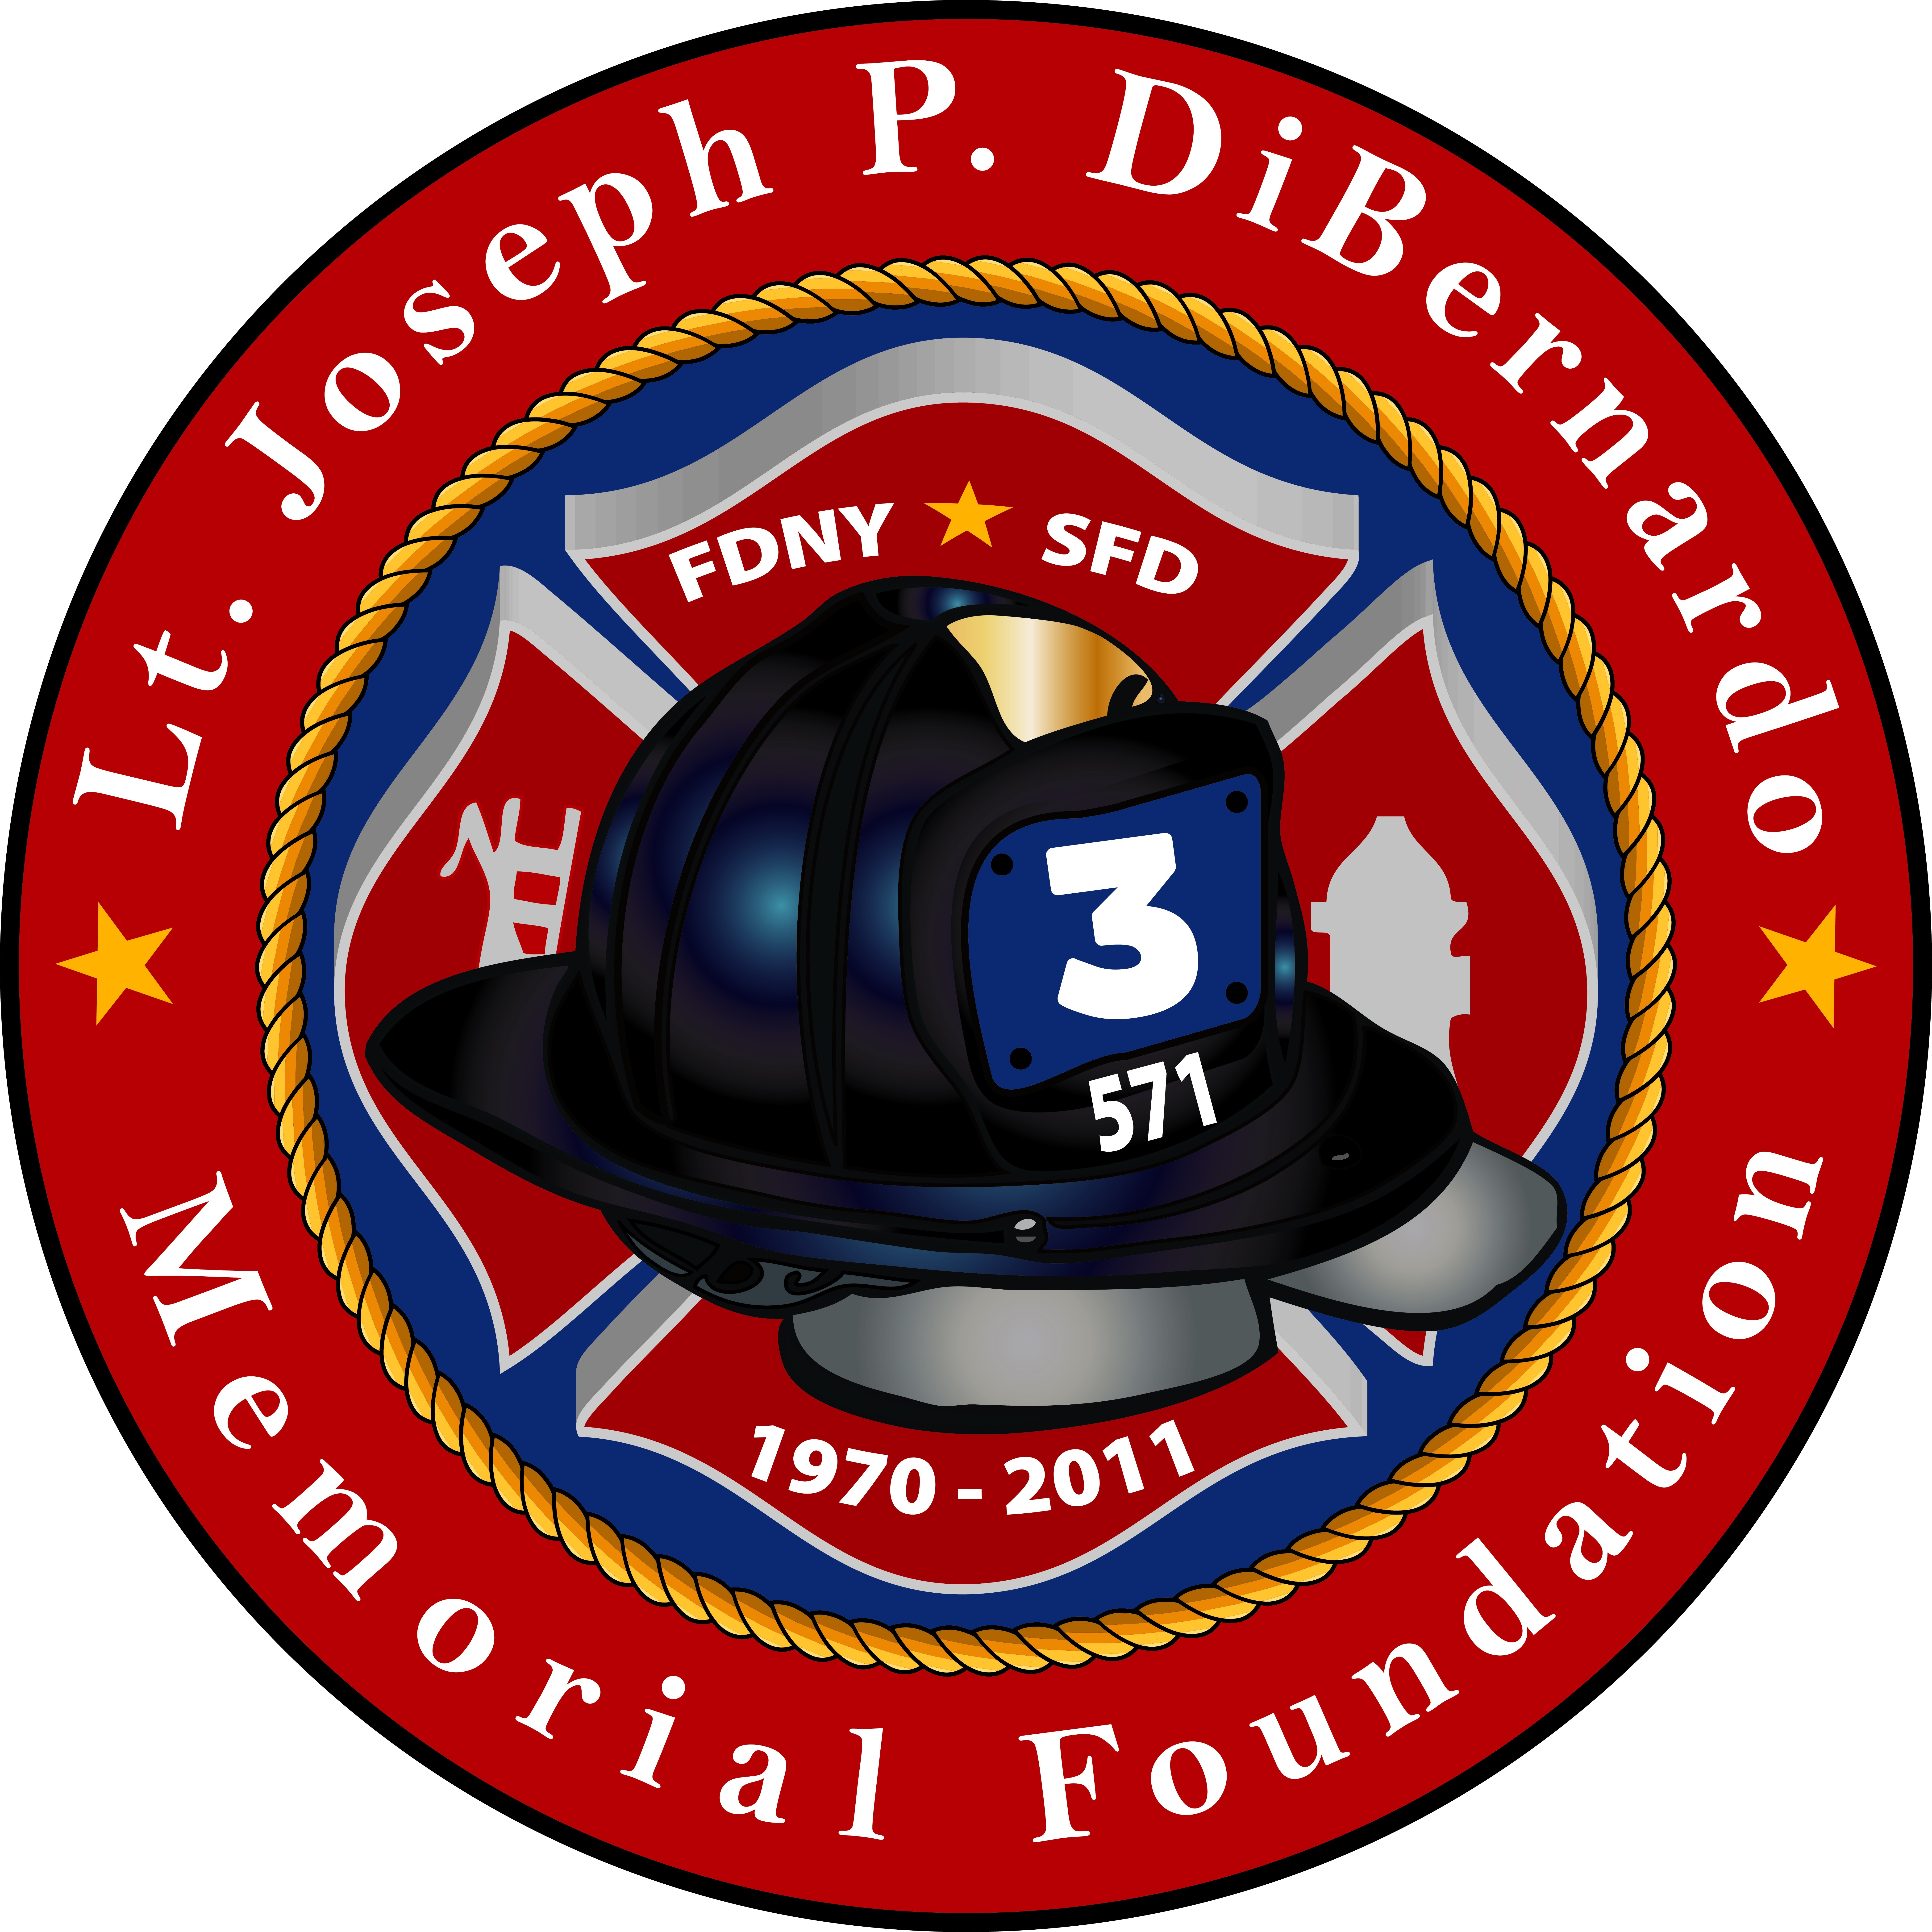 Lieutenant Joseph P. DiBernardo Memorial Foundation